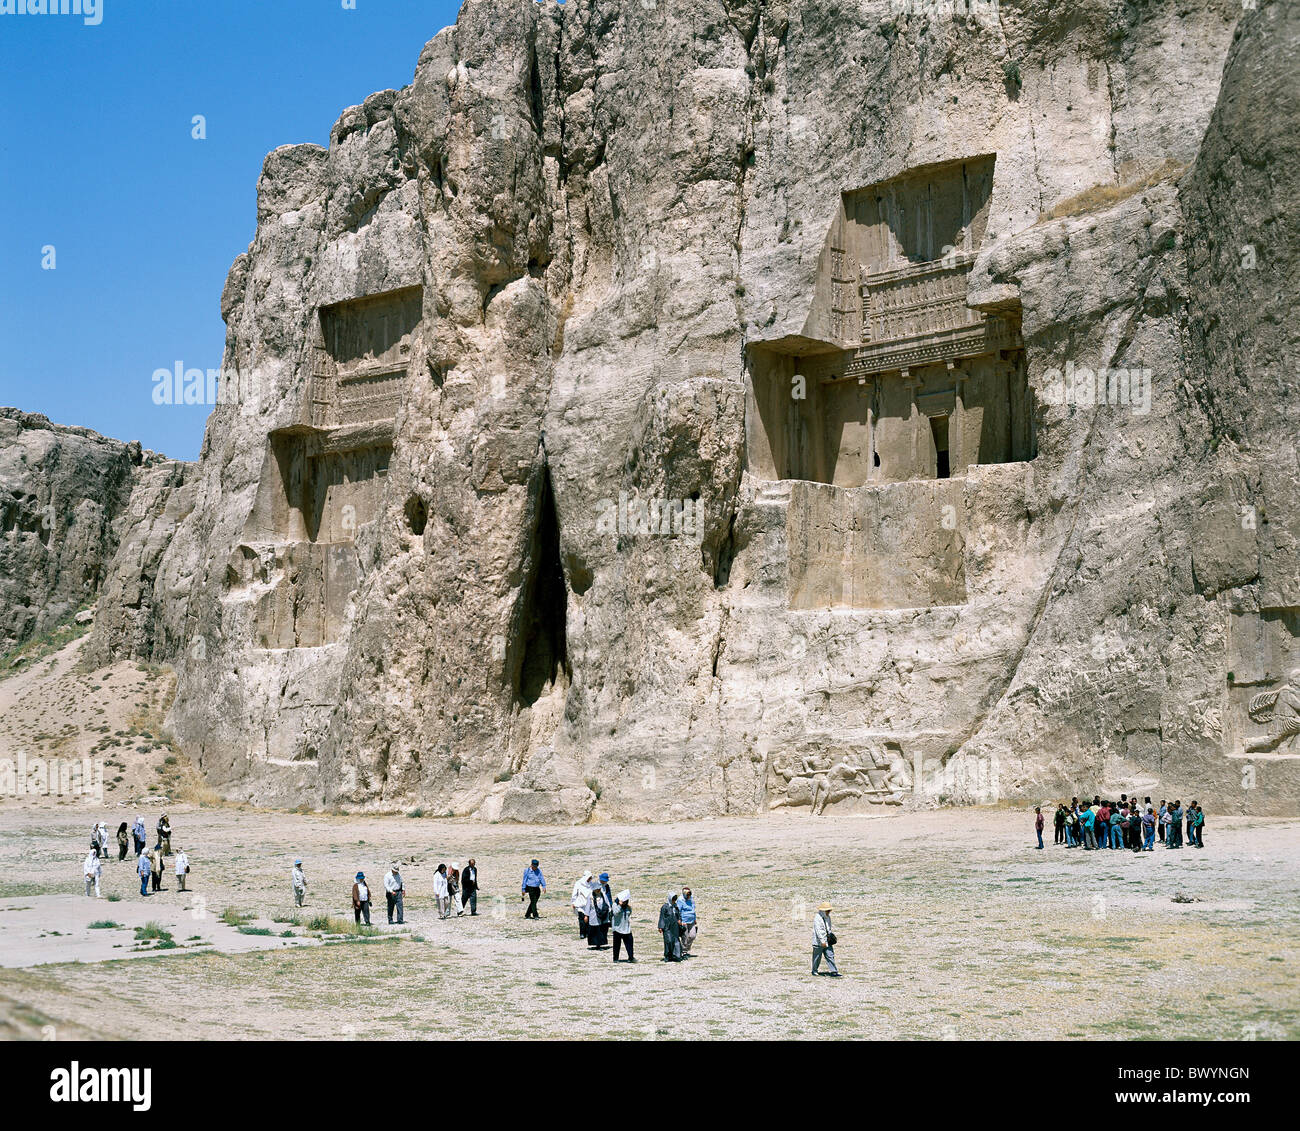 Achaemenische rock tombes tombes Iran Moyen-orient culture Naghsh Rostam e touristes monde antique l'antiquité Banque D'Images